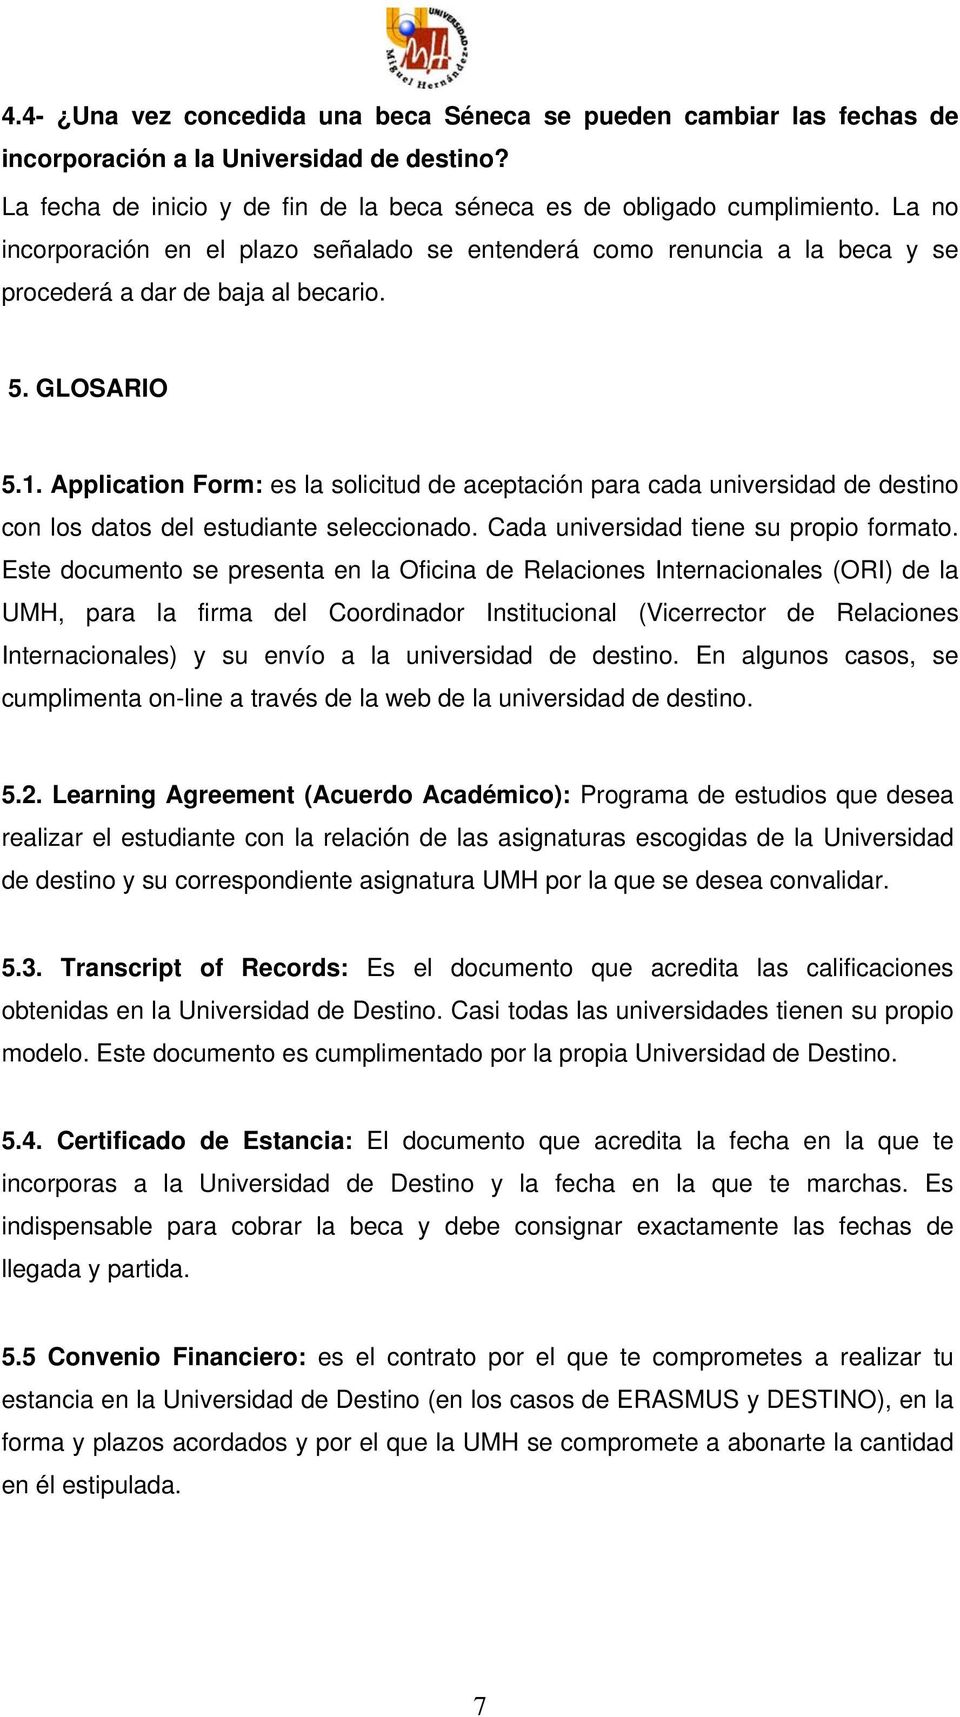 Application Form: es la solicitud de aceptación para cada universidad de destino con los datos del estudiante seleccionado. Cada universidad tiene su propio formato.